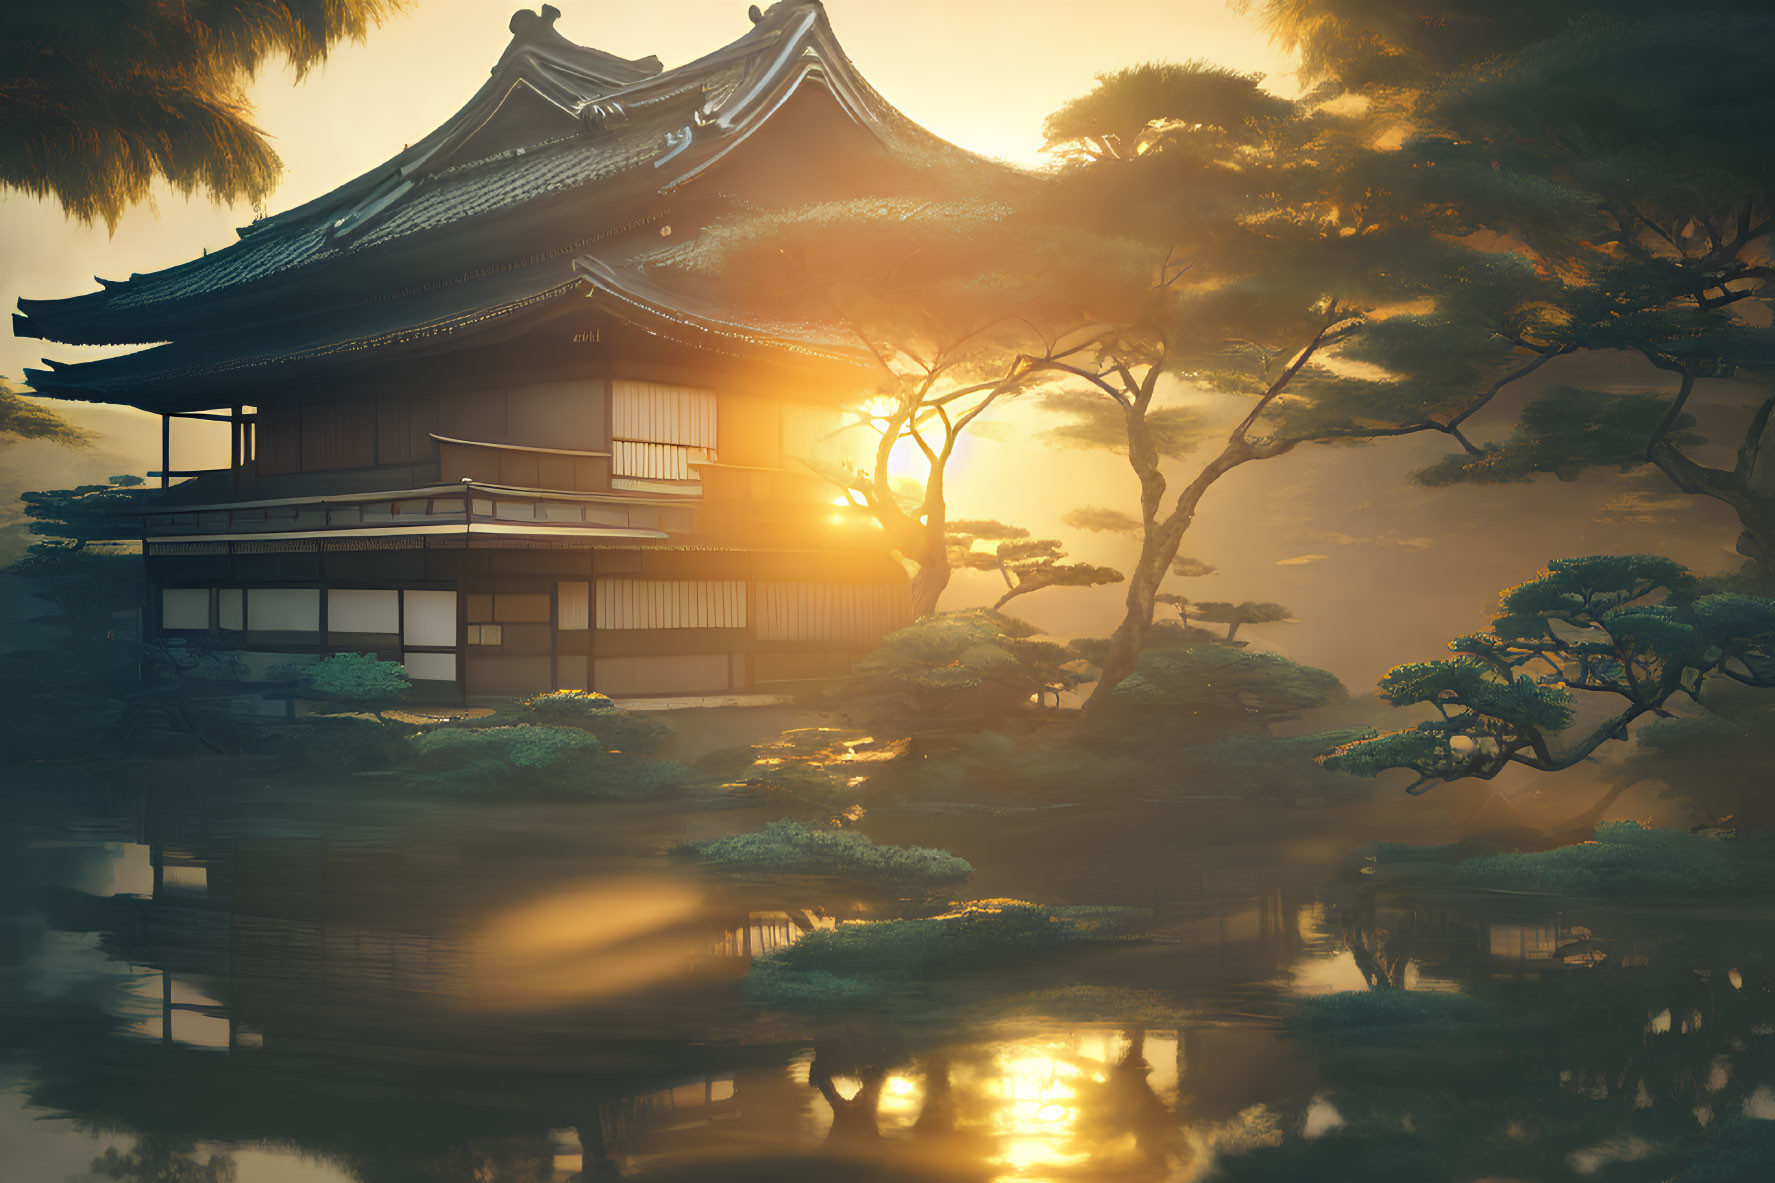 Japanese House Sunset Reflection Pine Trees